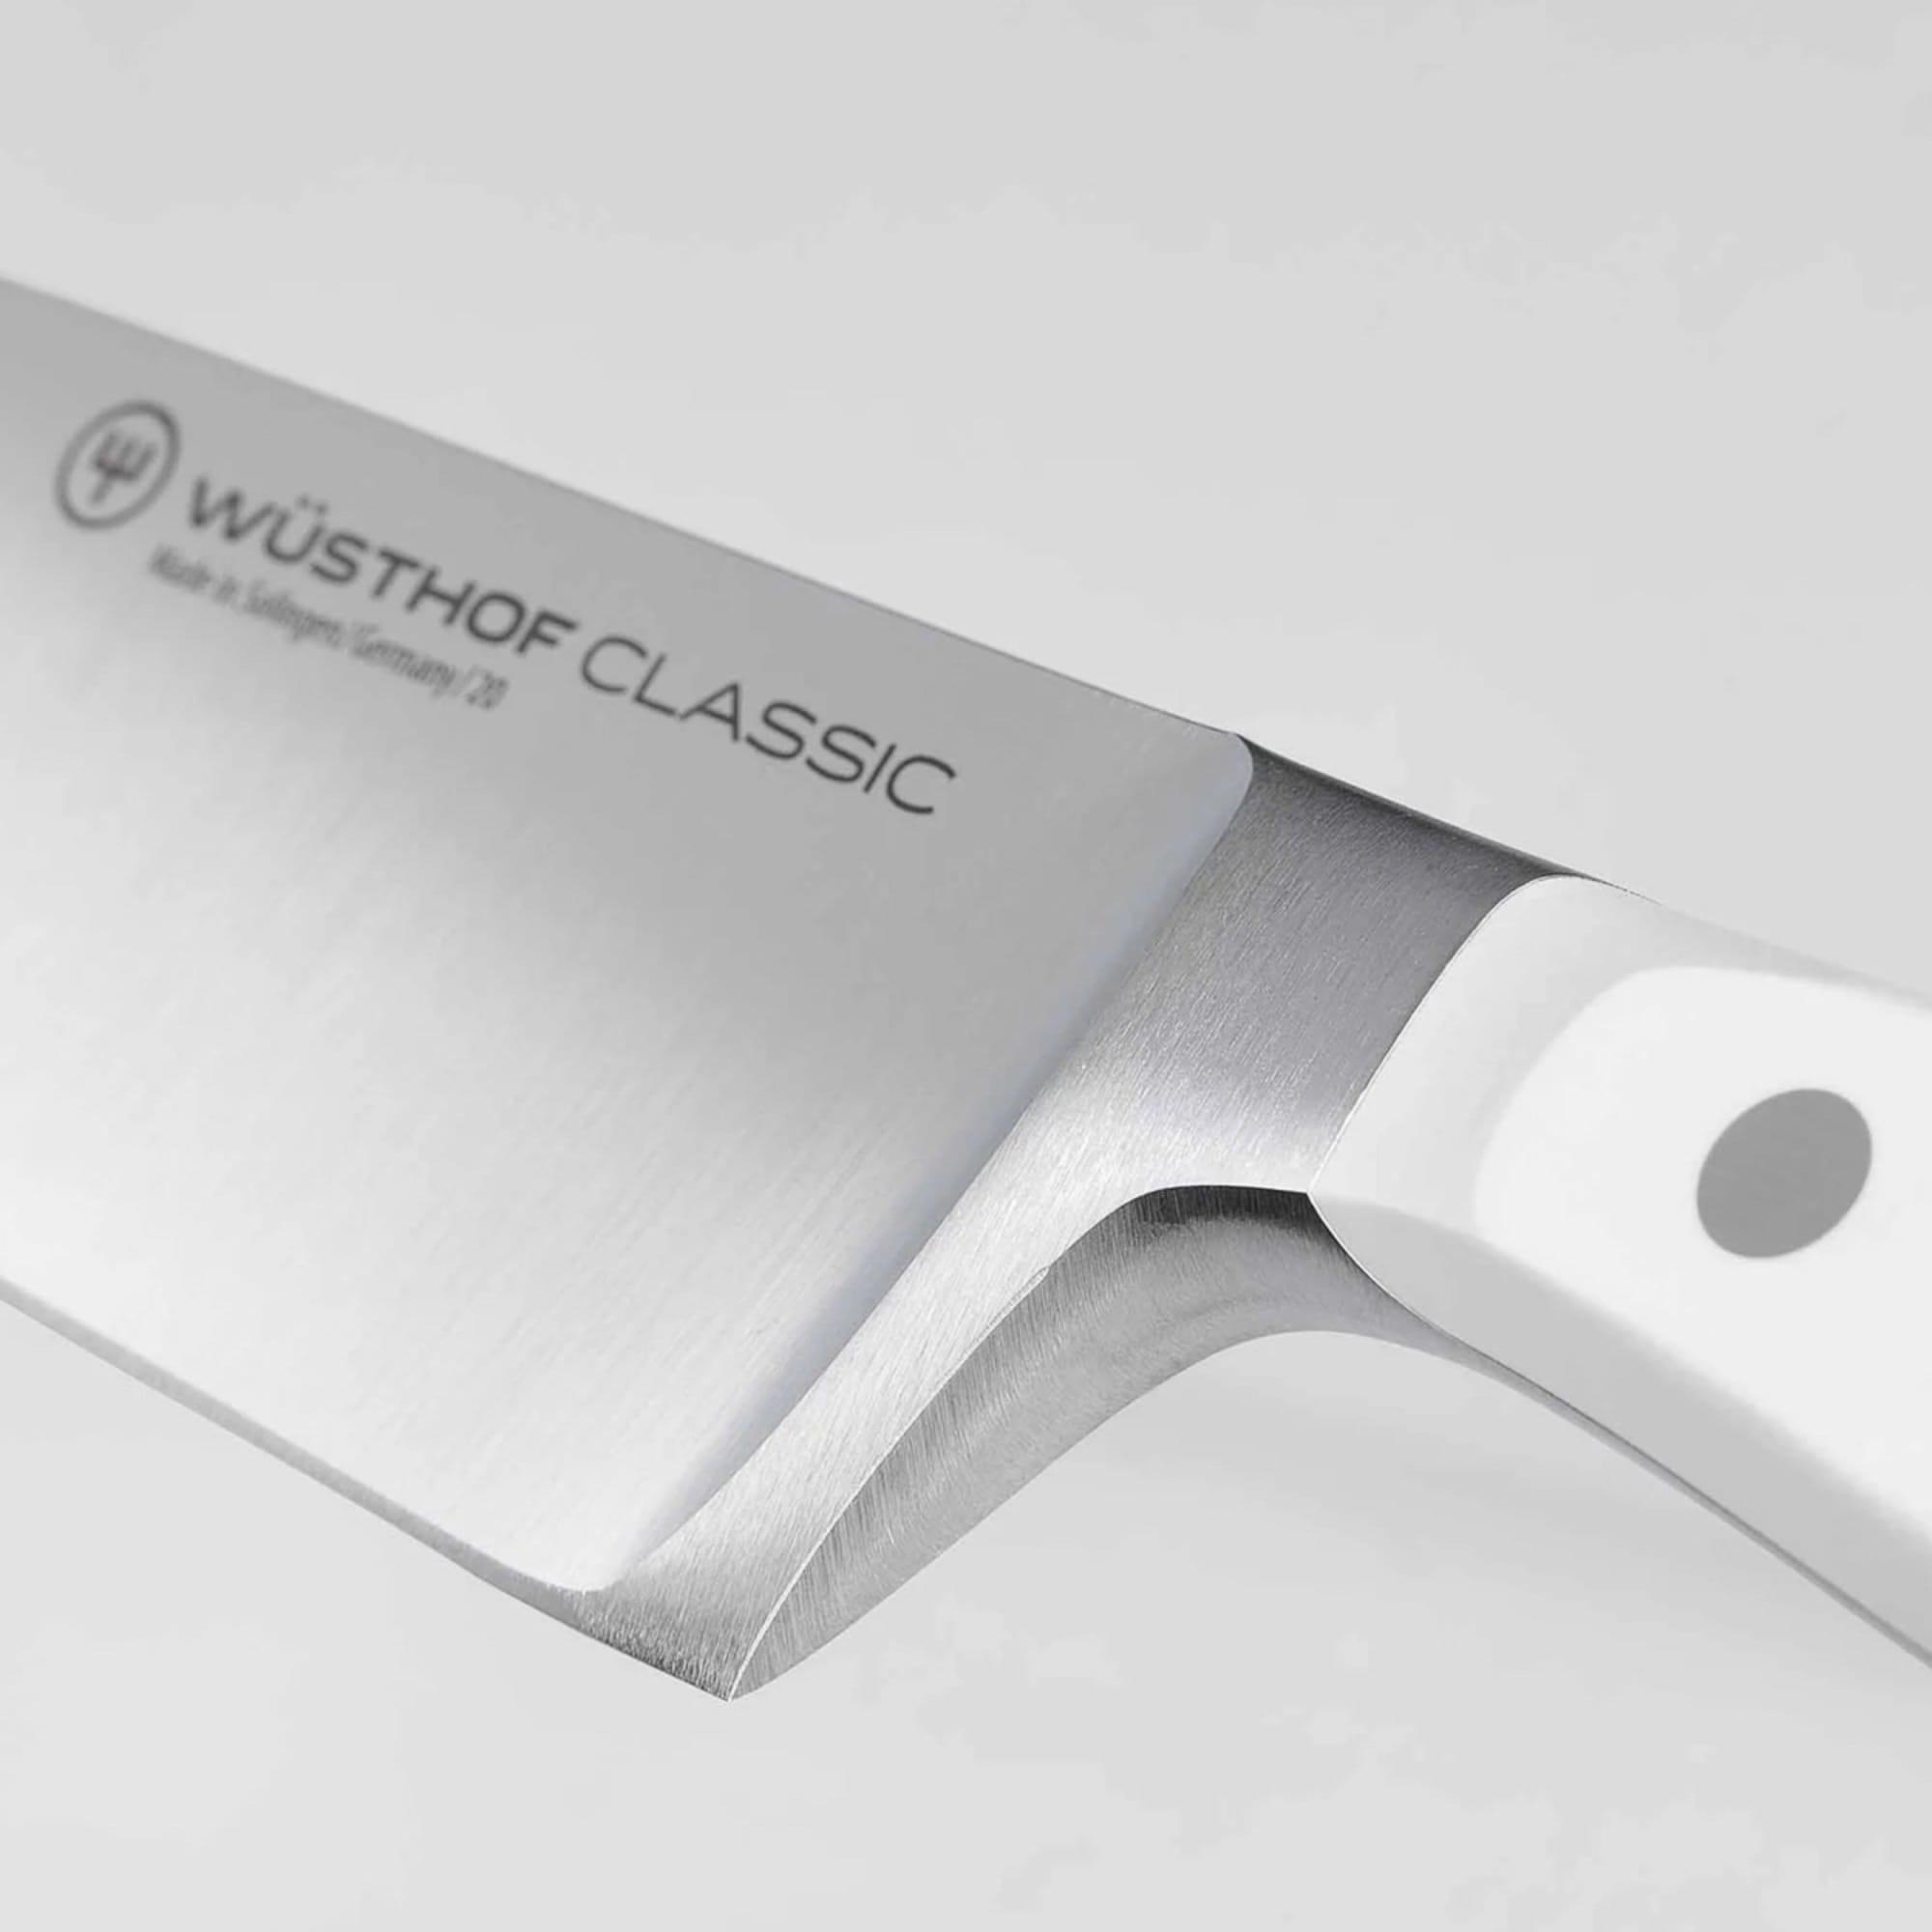 Wusthof Classic White 6pc Design Knife Block Set with Santoku Knife Image 5